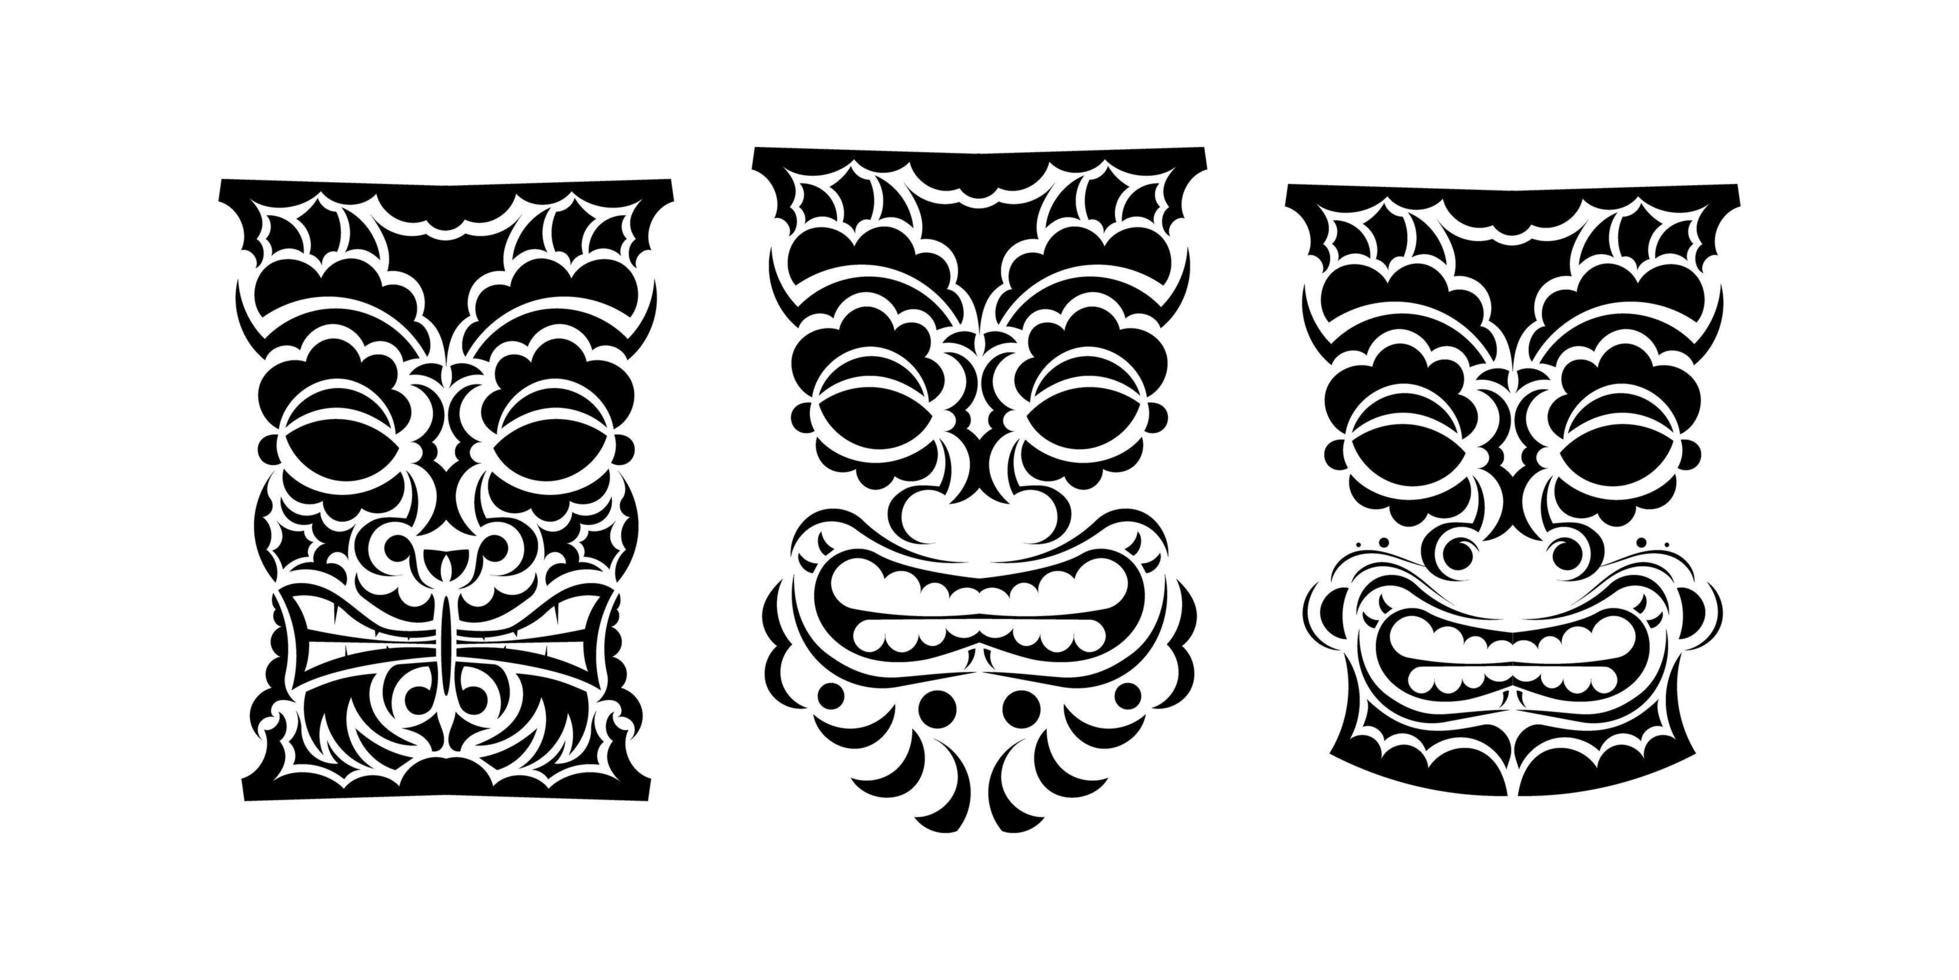 ensemble de totems de visages dans un style d'ornement. motifs tribaux polynésiens, maoris ou hawaïens. bon pour les imprimés, les tatouages et les t-shirts. isolé. illustration vectorielle. vecteur